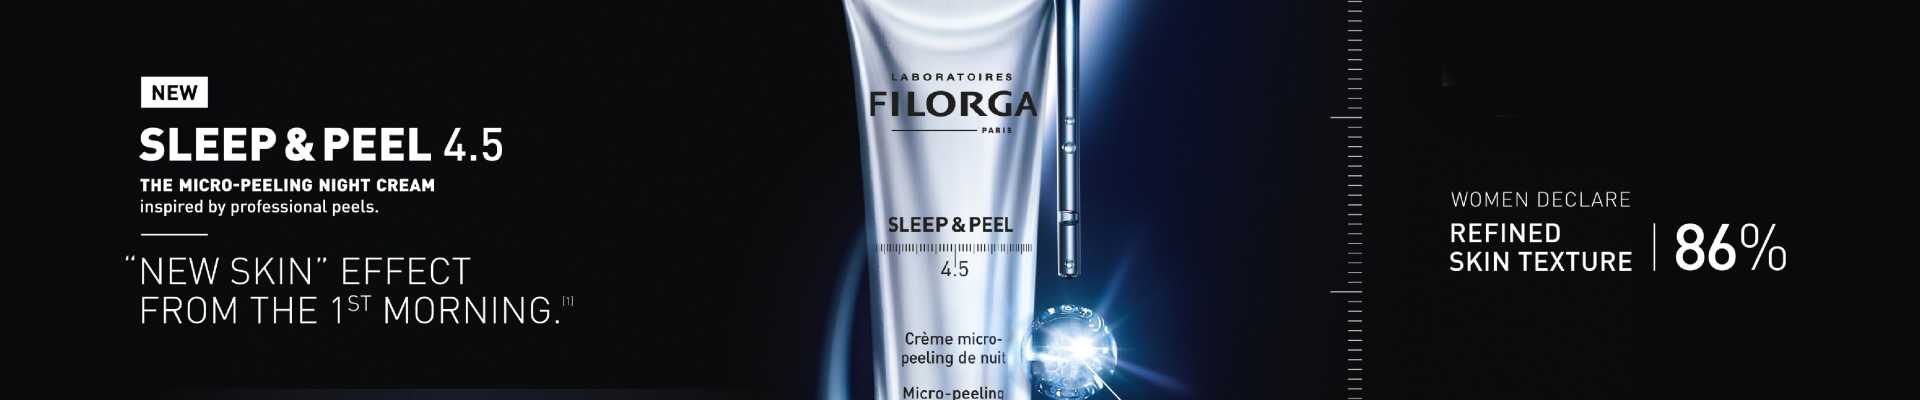 filorga sleep and peel slider